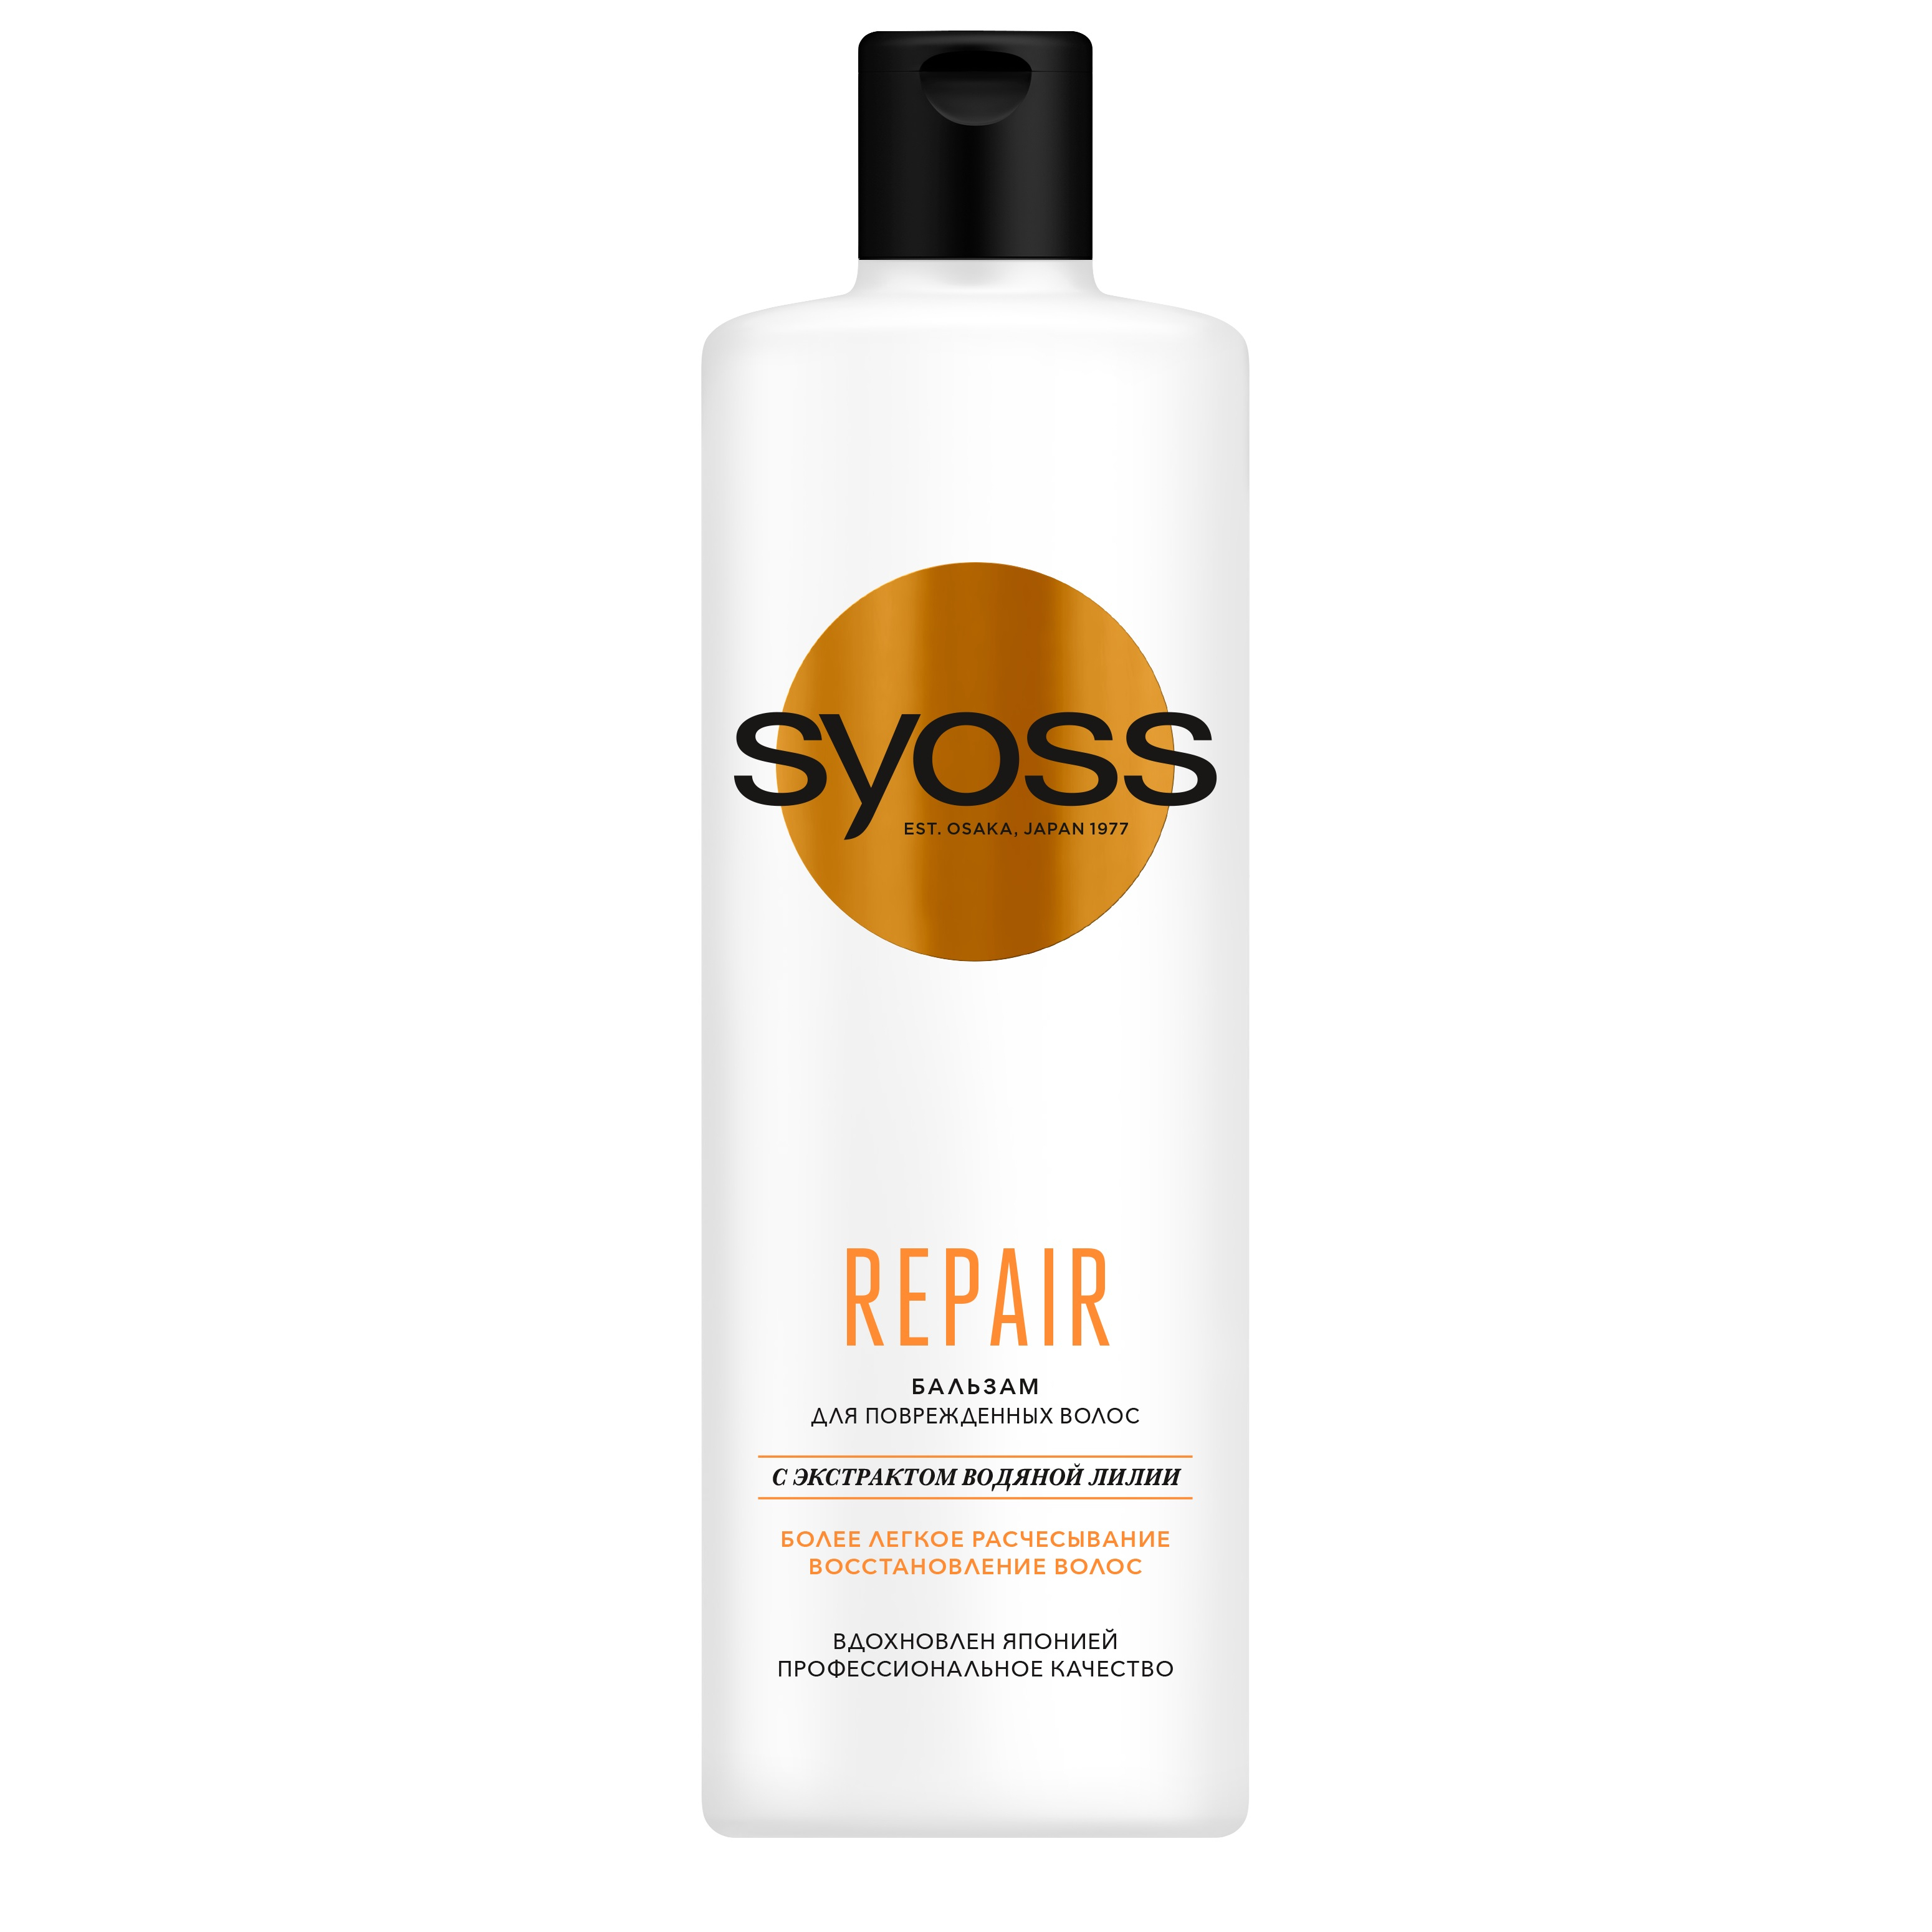 Бальзам для волос Syoss Repair восстанавливающий 450 мл шампунь для волос john frieda full repair восстанавливающий 250 мл